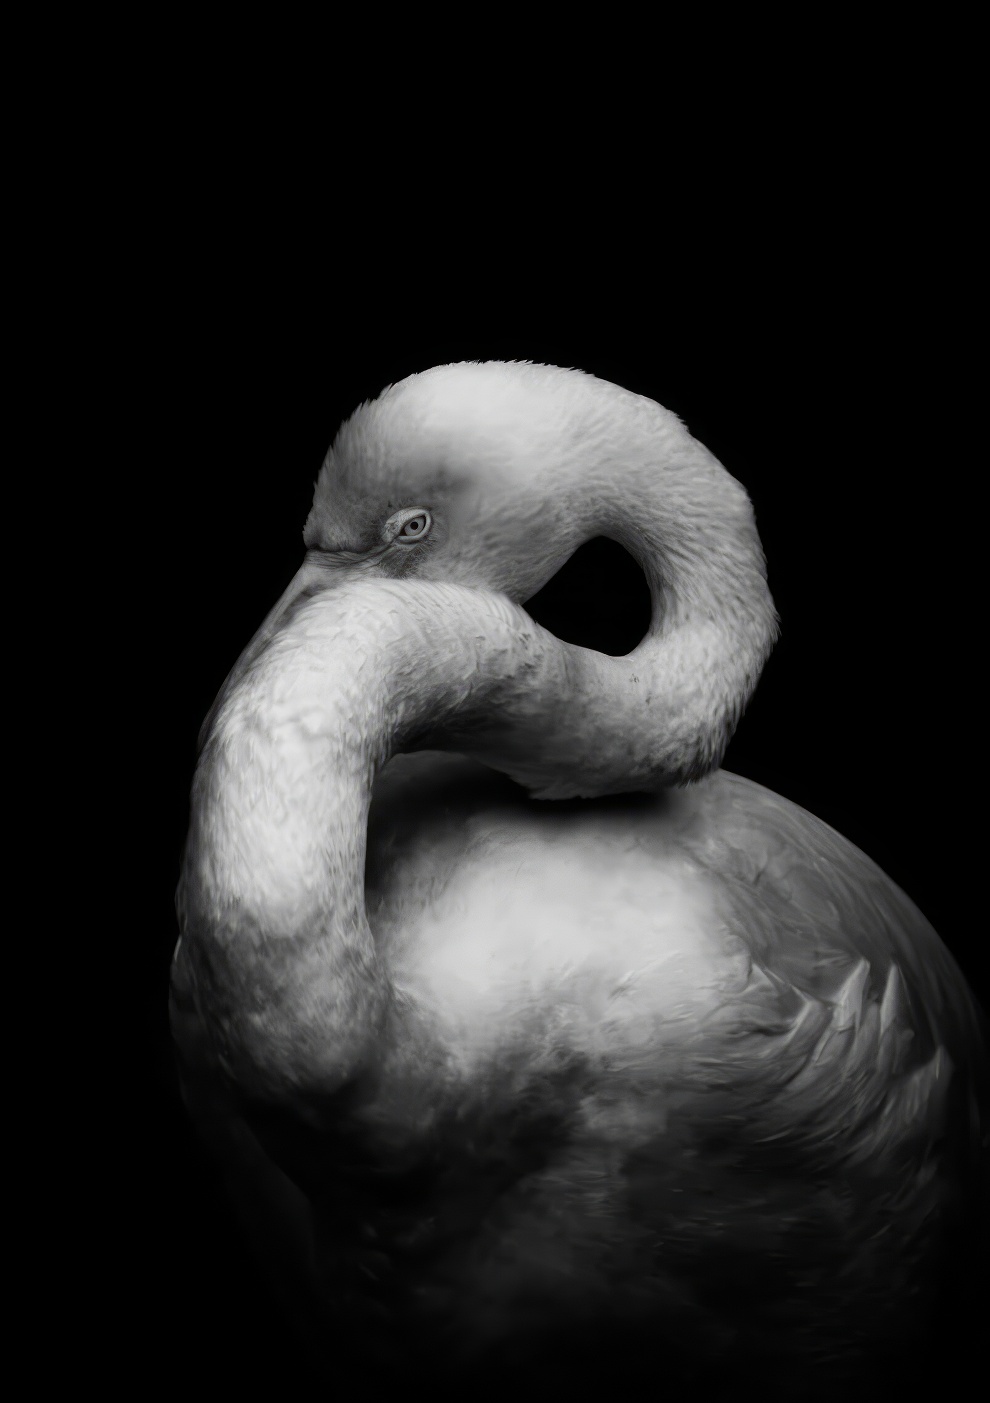 Чёрно-белые снимки природы победители Monochrome Photography Awards